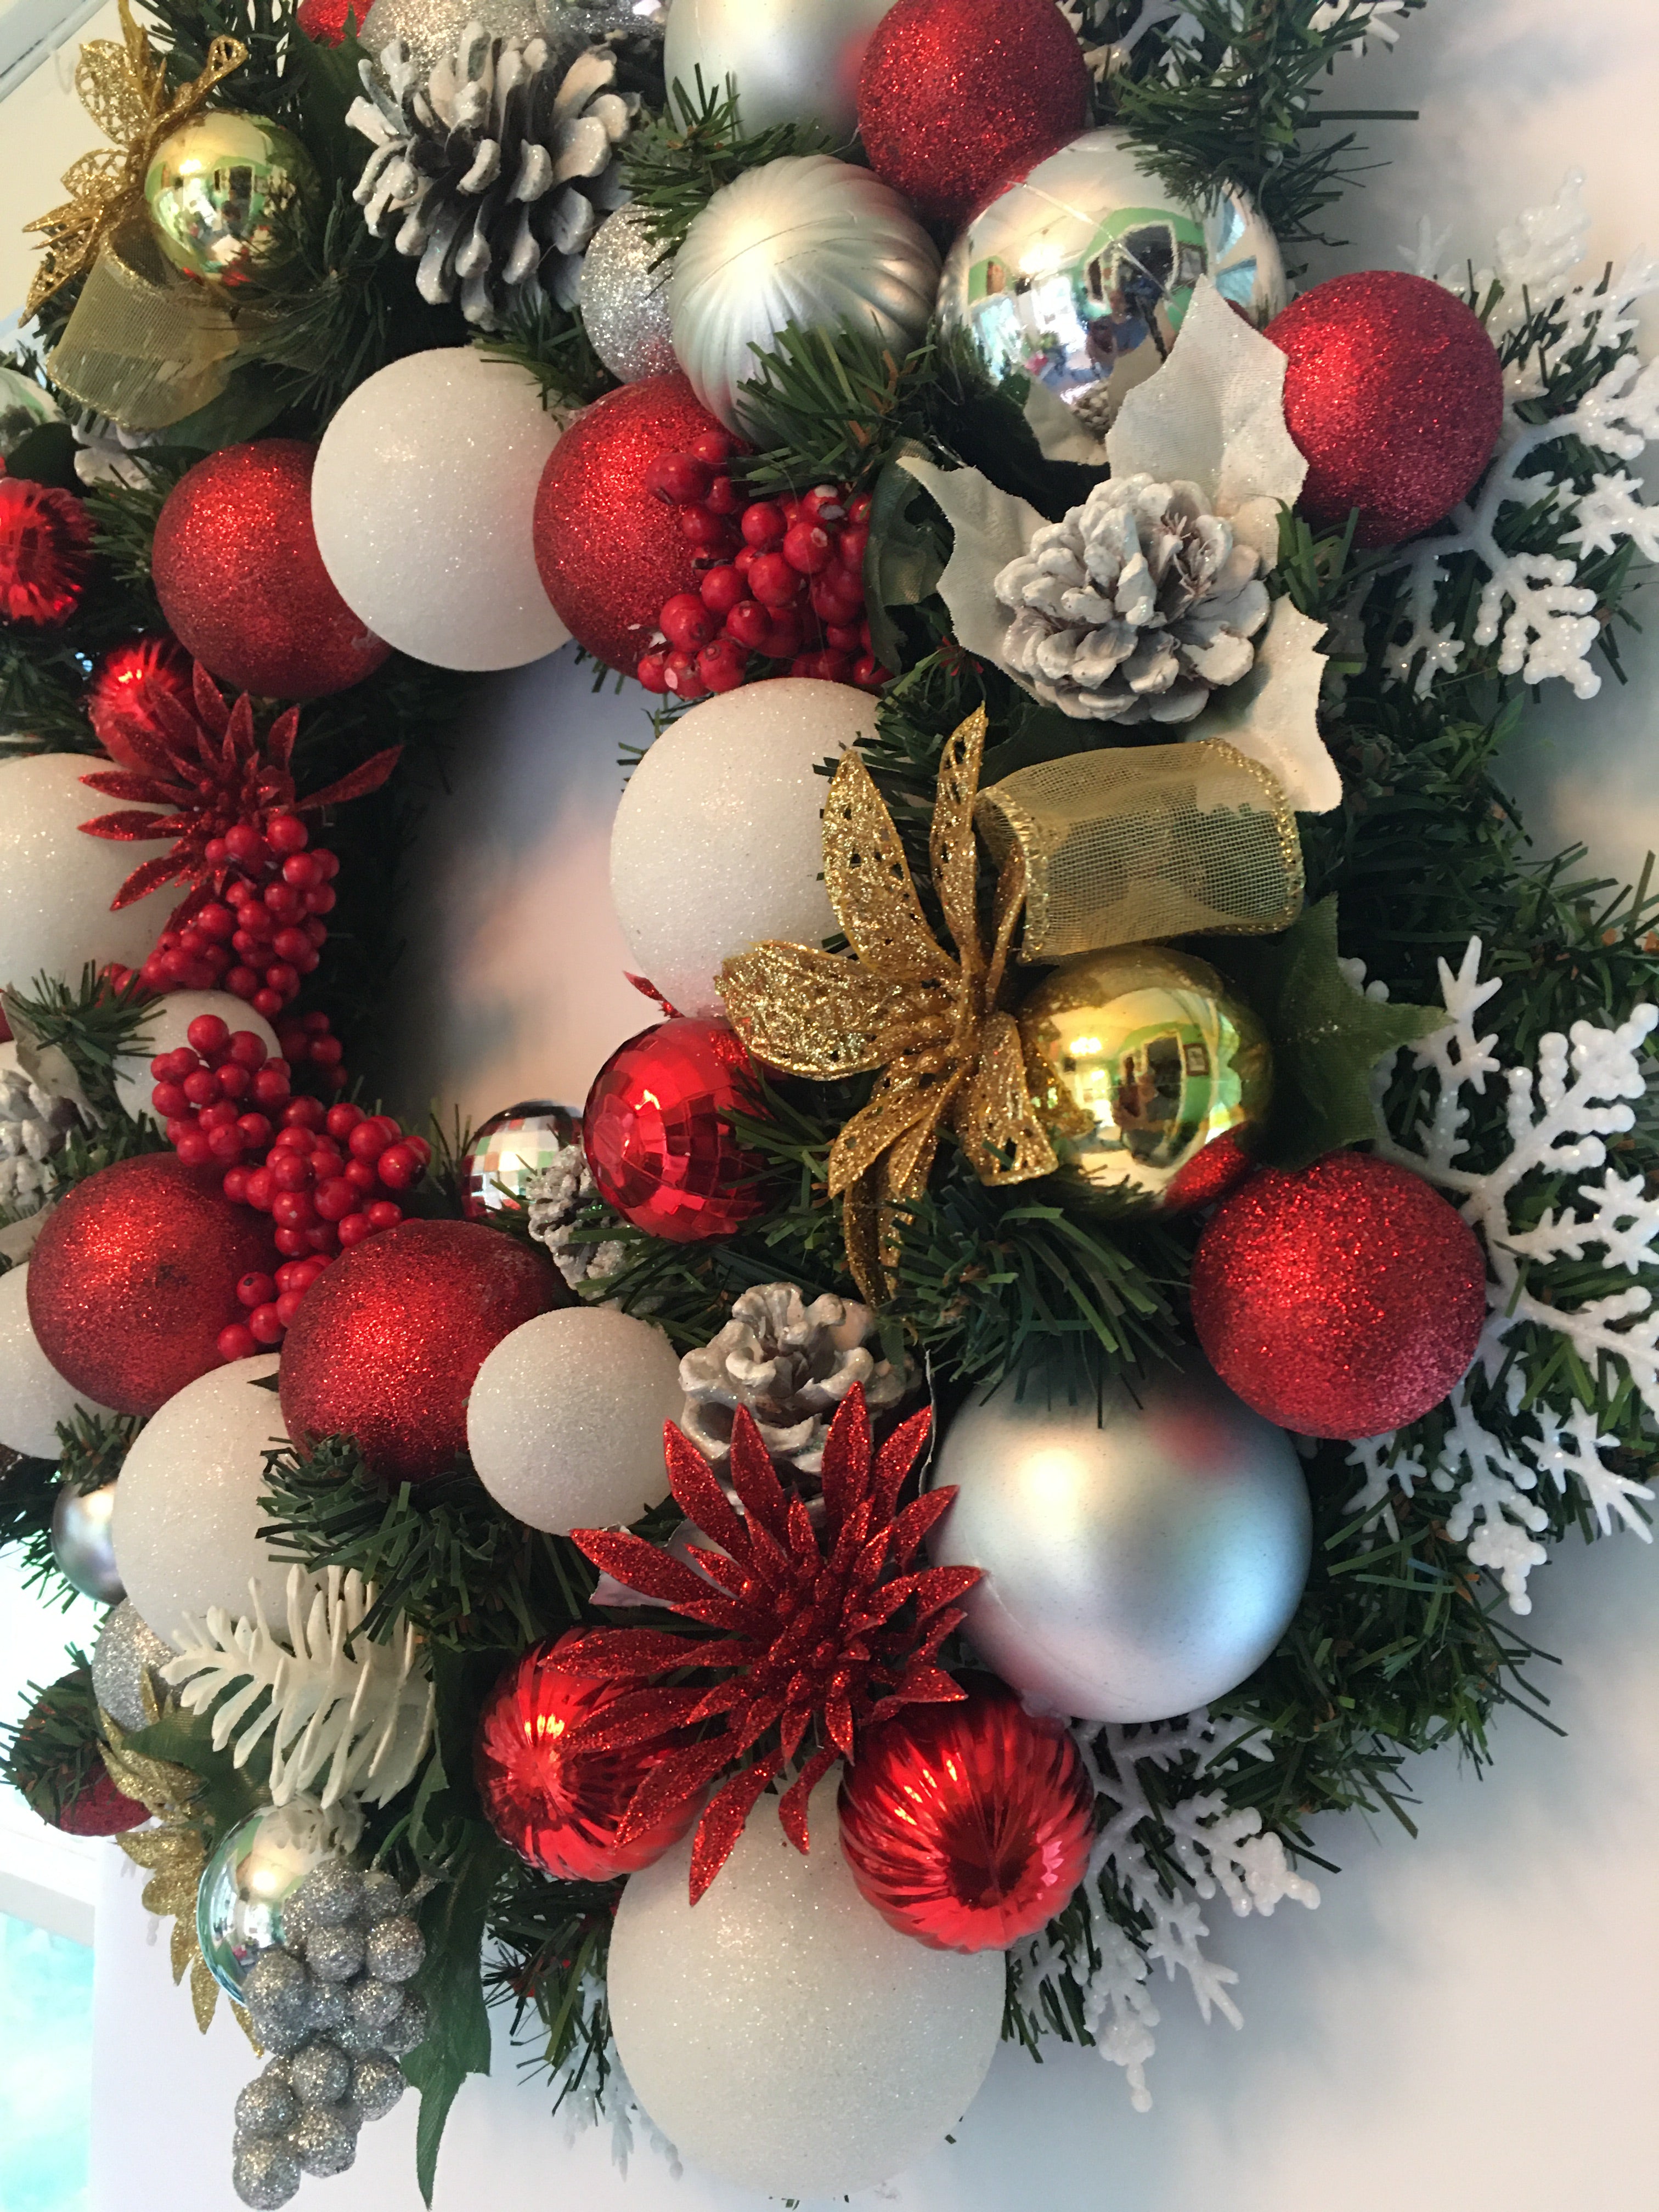 Holly Jolly Christmas Ornament Wreath 20 x 5